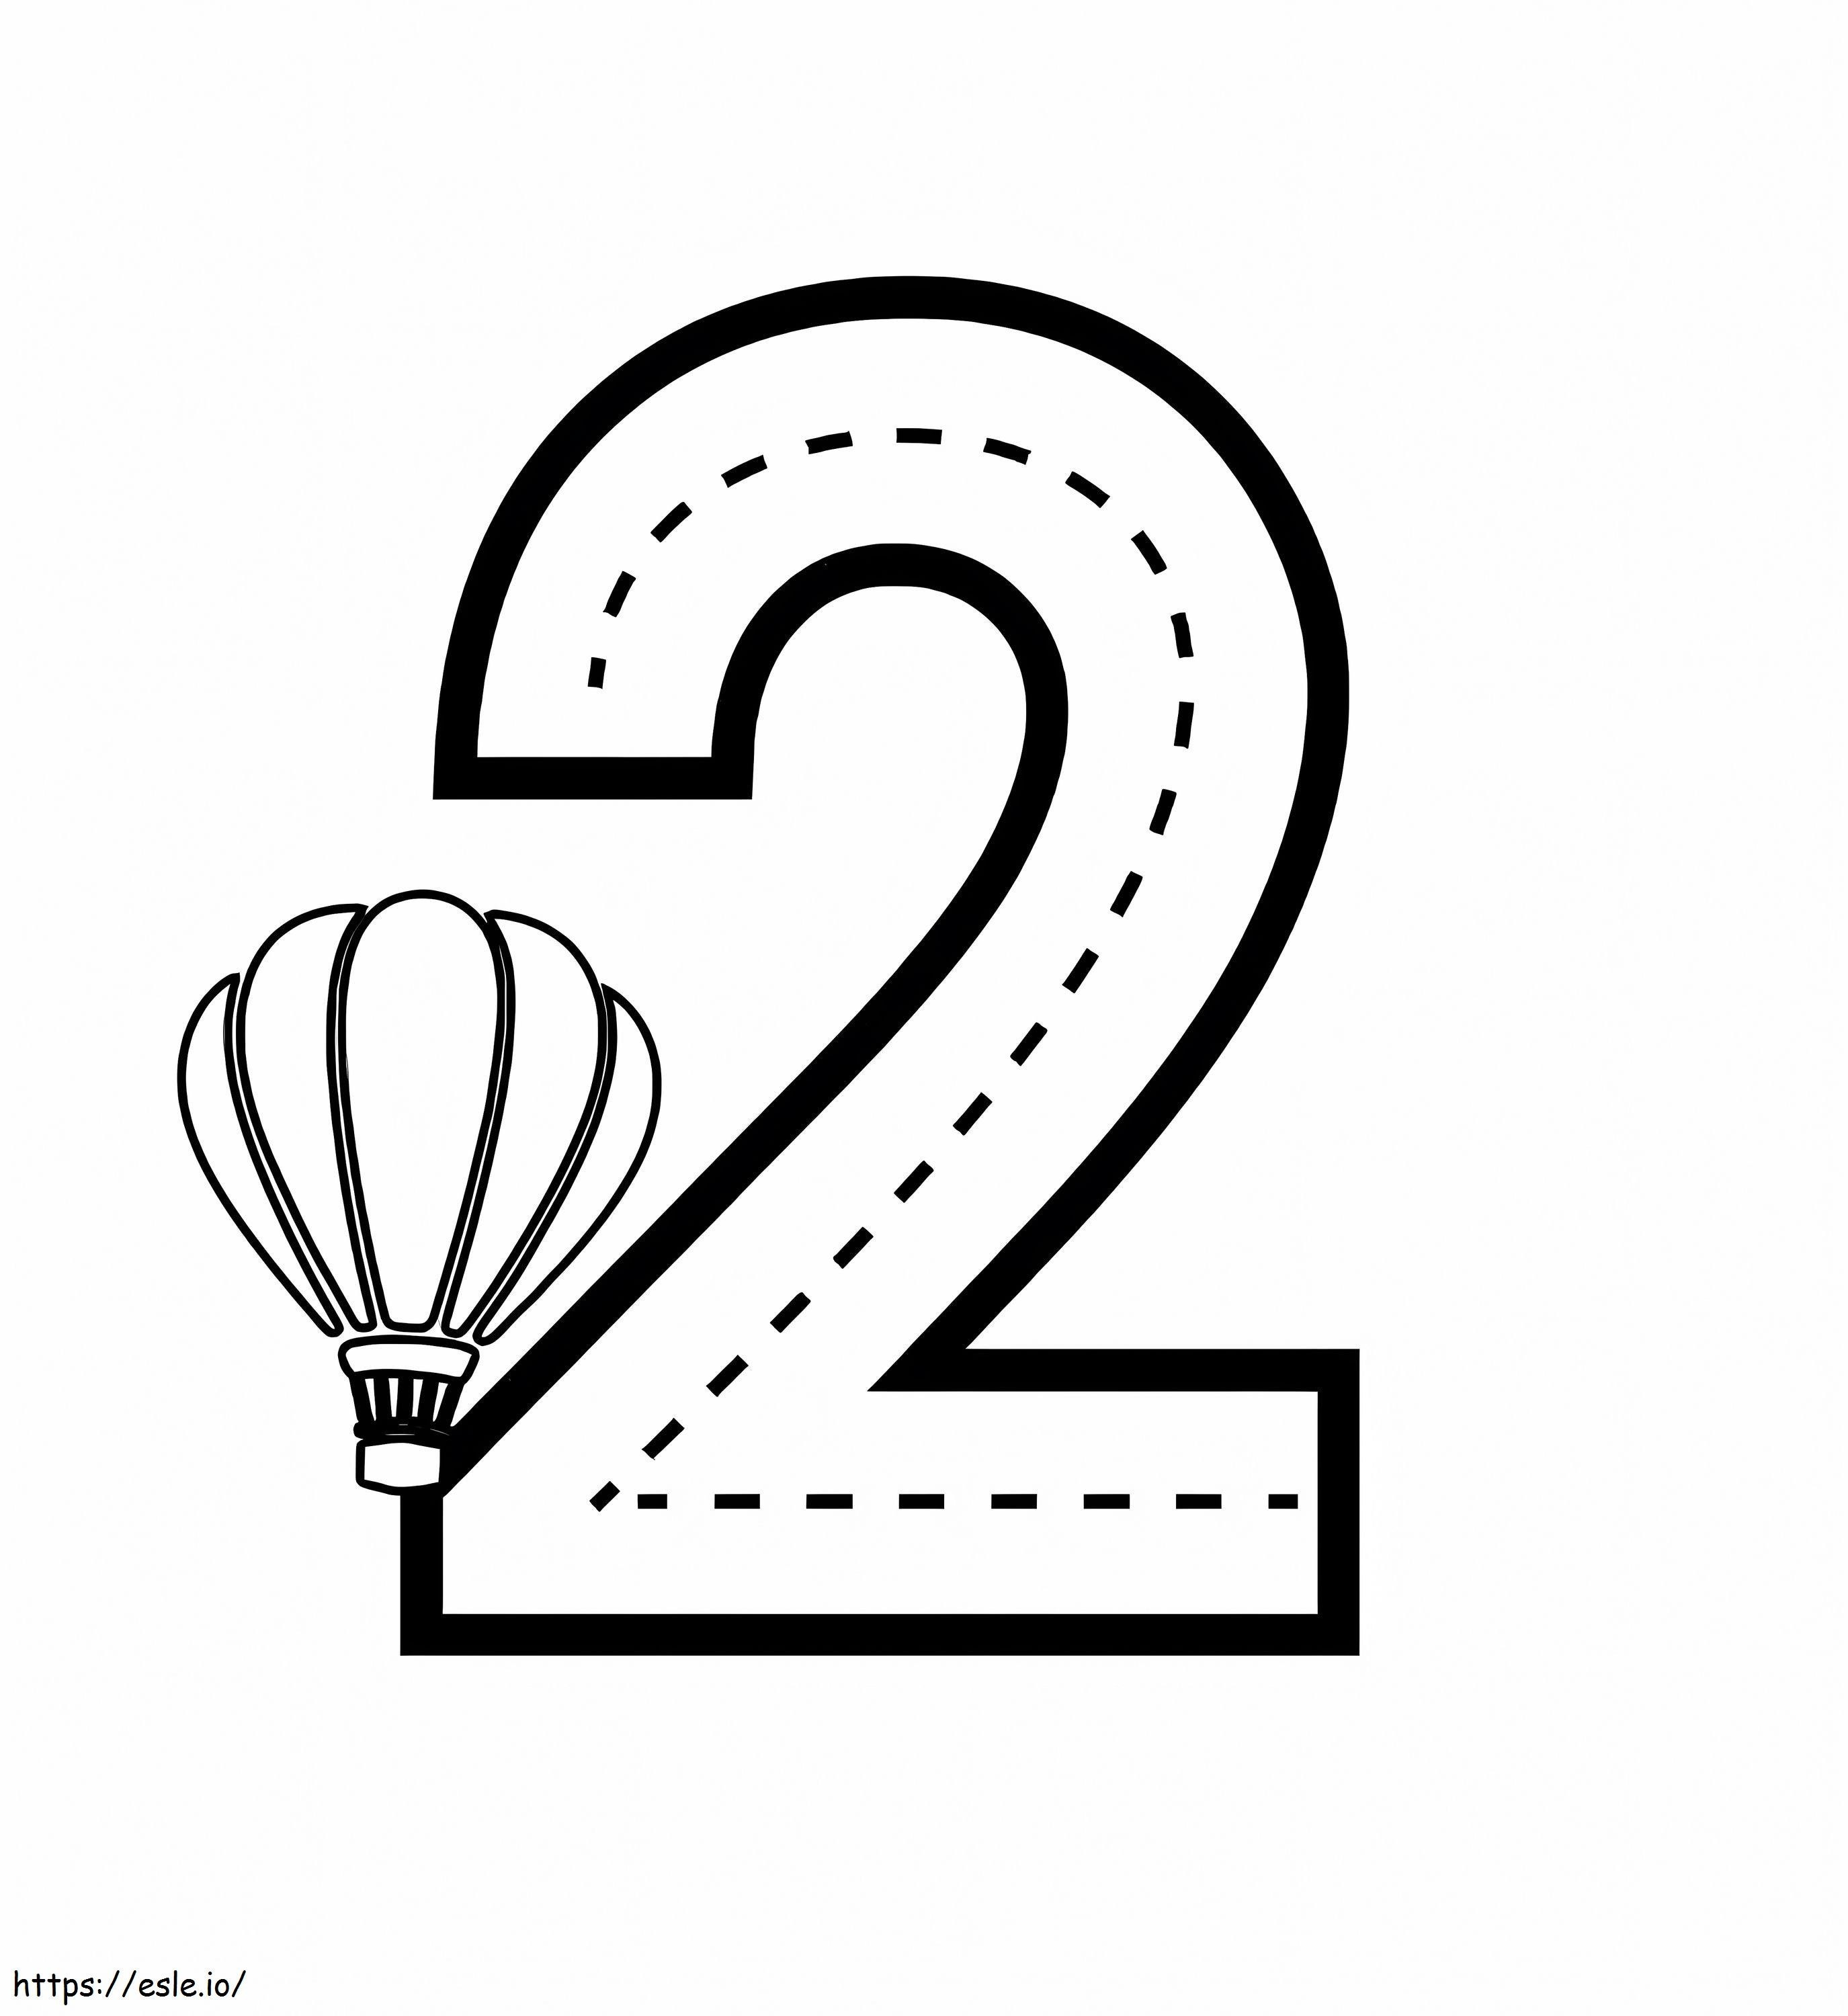 Numărul 2 și balonul cu aer cald de colorat